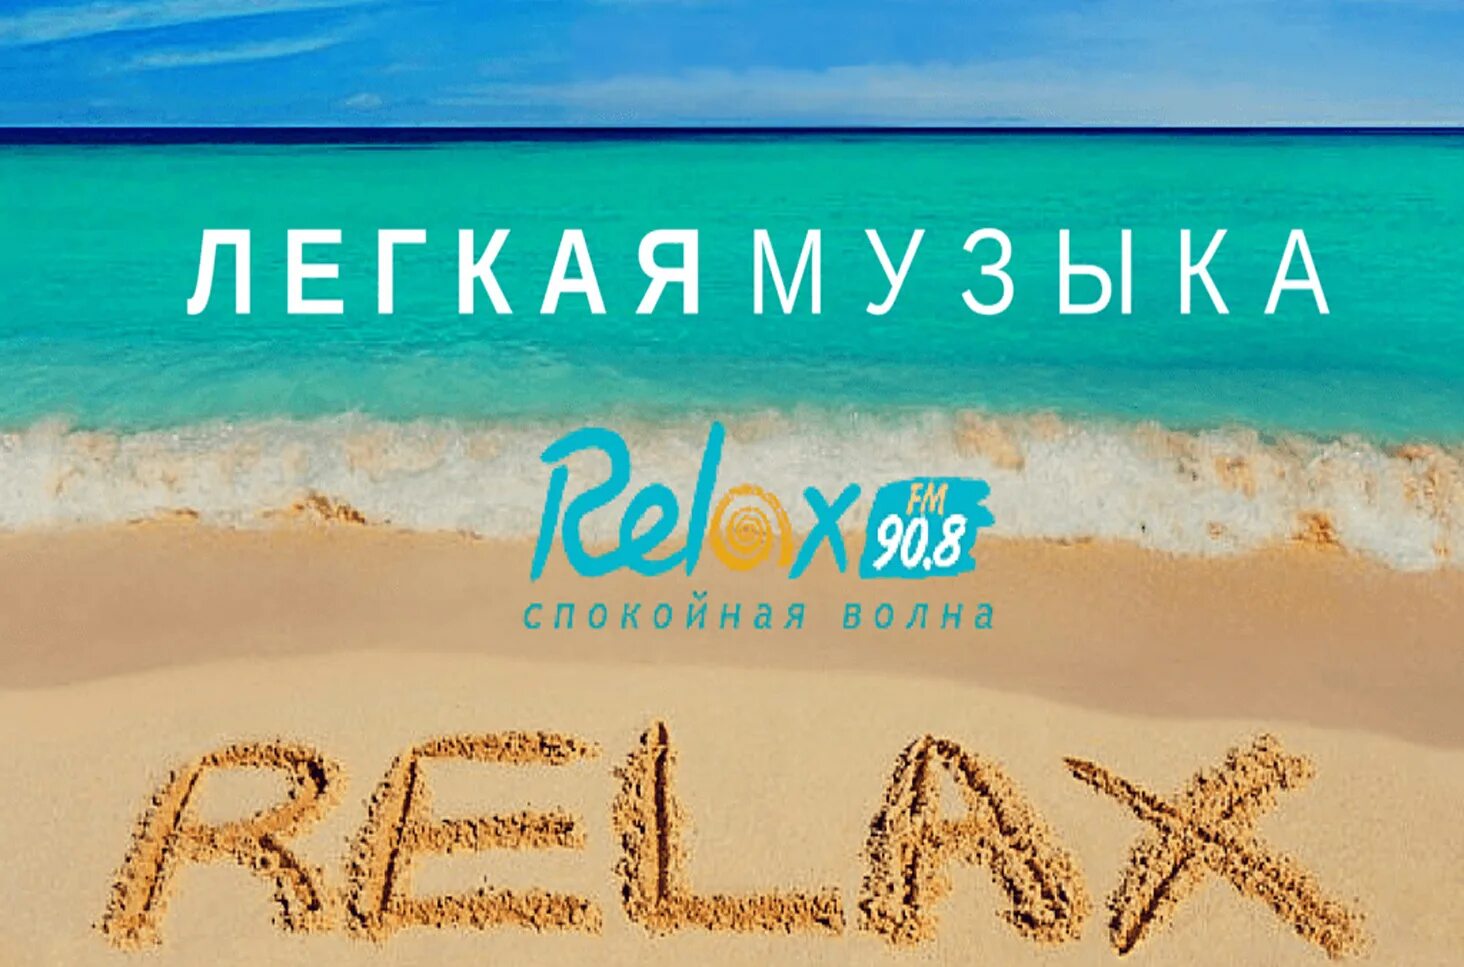 Играй радио релакс. Релакс ФМ. Релакс ФМ логотип. Radio relay. Релакс ФМ Воронеж.